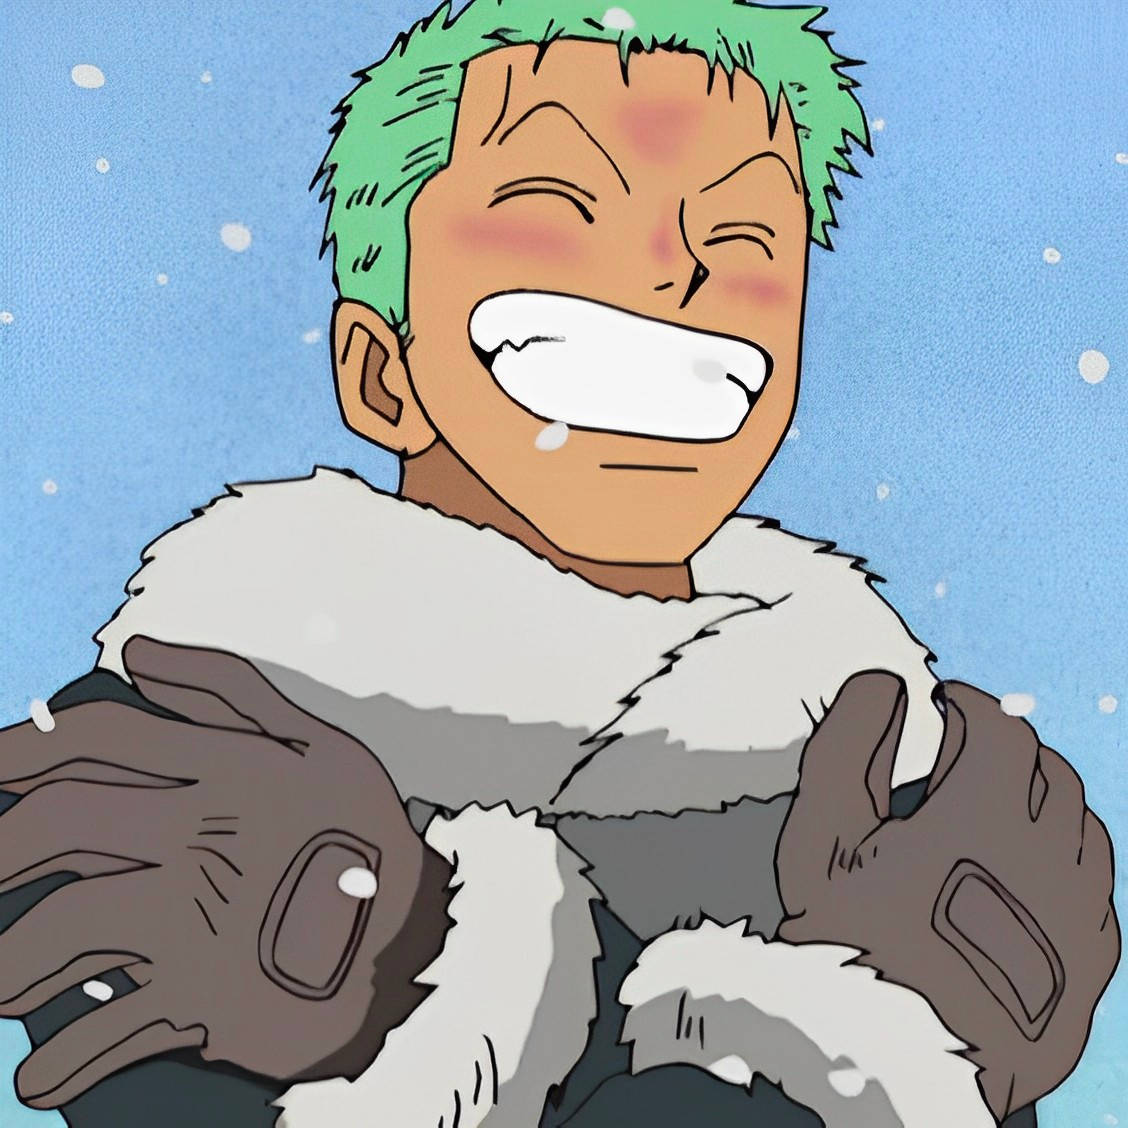 Smiling Anime Zoro PFP In Snow Wallpaper